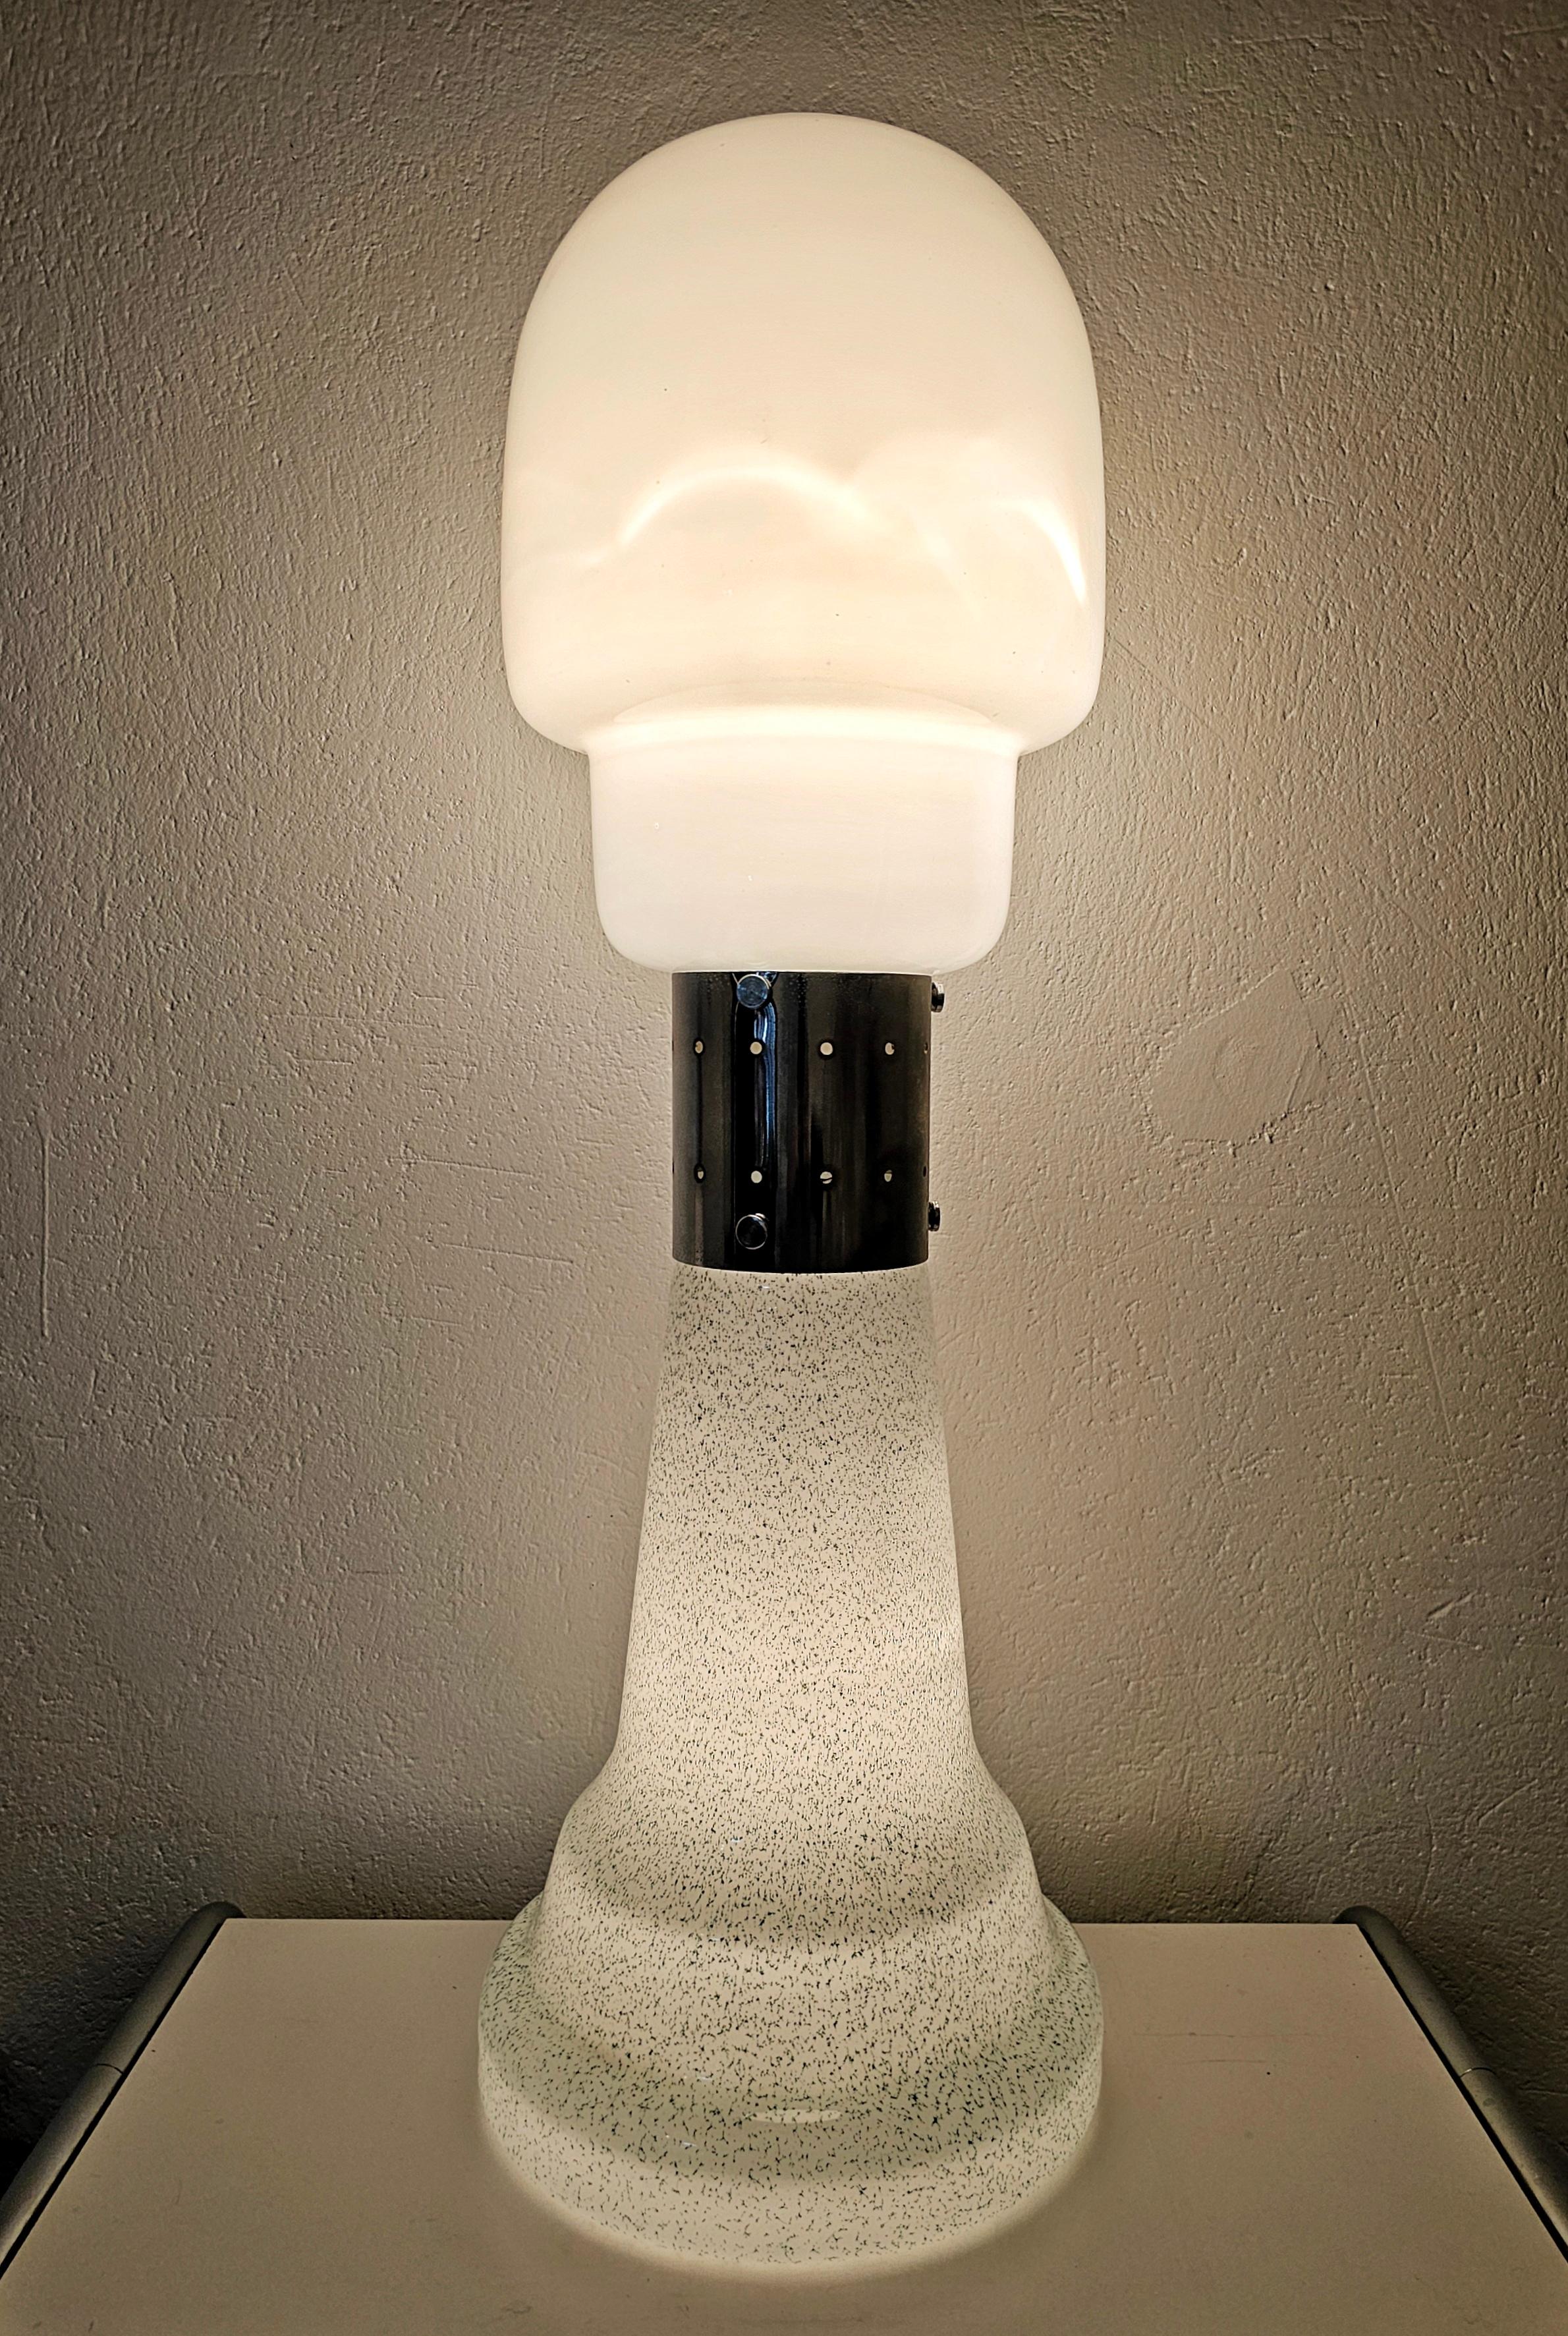 Vous trouverez dans cette liste un spectaculaire lampadaire en verre de Murano conçu par Carlo Nason pour Mazzega. Whiting se compose de deux grandes pièces de verre, la pièce supérieure en blanc et la pièce inférieure en verre de Murano blanc et